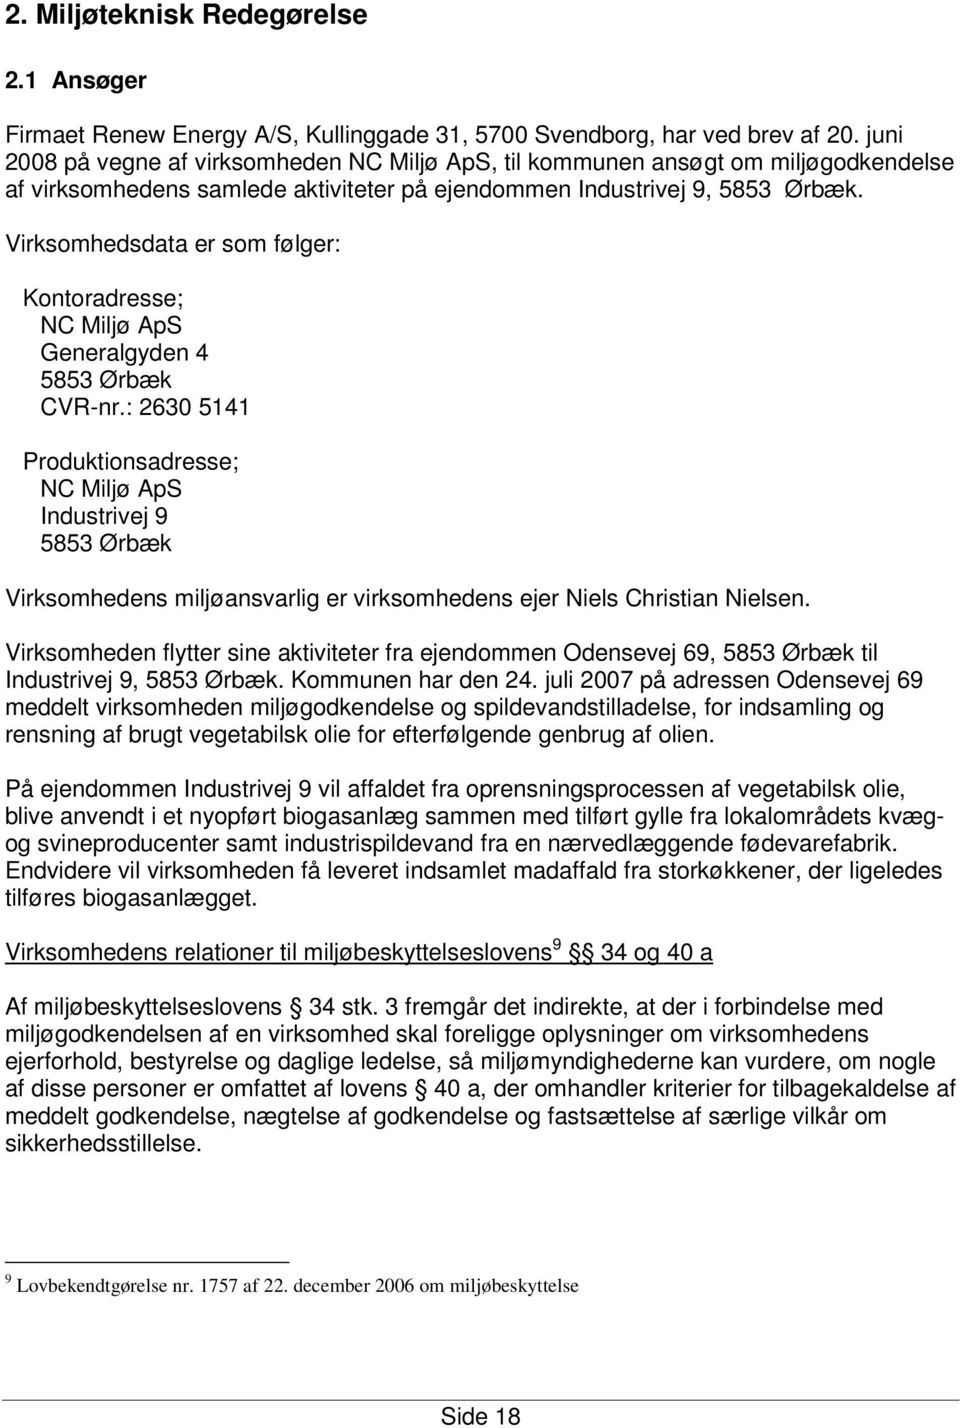 Virksomhedsdata er som følger: Kontoradresse; NC Miljø ApS Generalgyden 4 5853 Ørbæk CVR-nr.